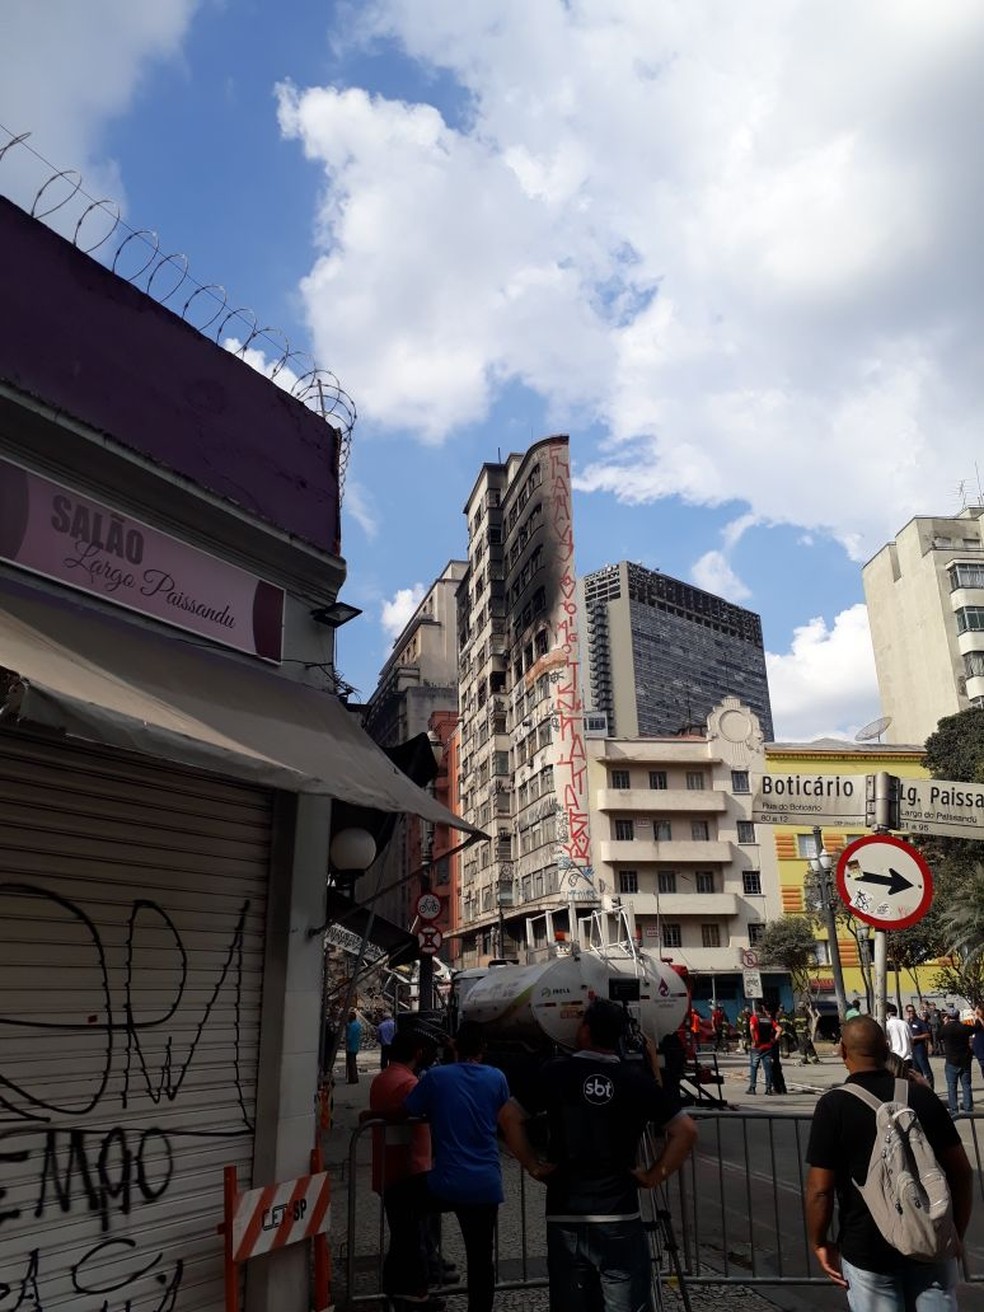 whatsapp image 2018 05 03 at 12.54.25 - Defesa Civil condena prédio vizinho a edifício que desmoronou no Centro de SP